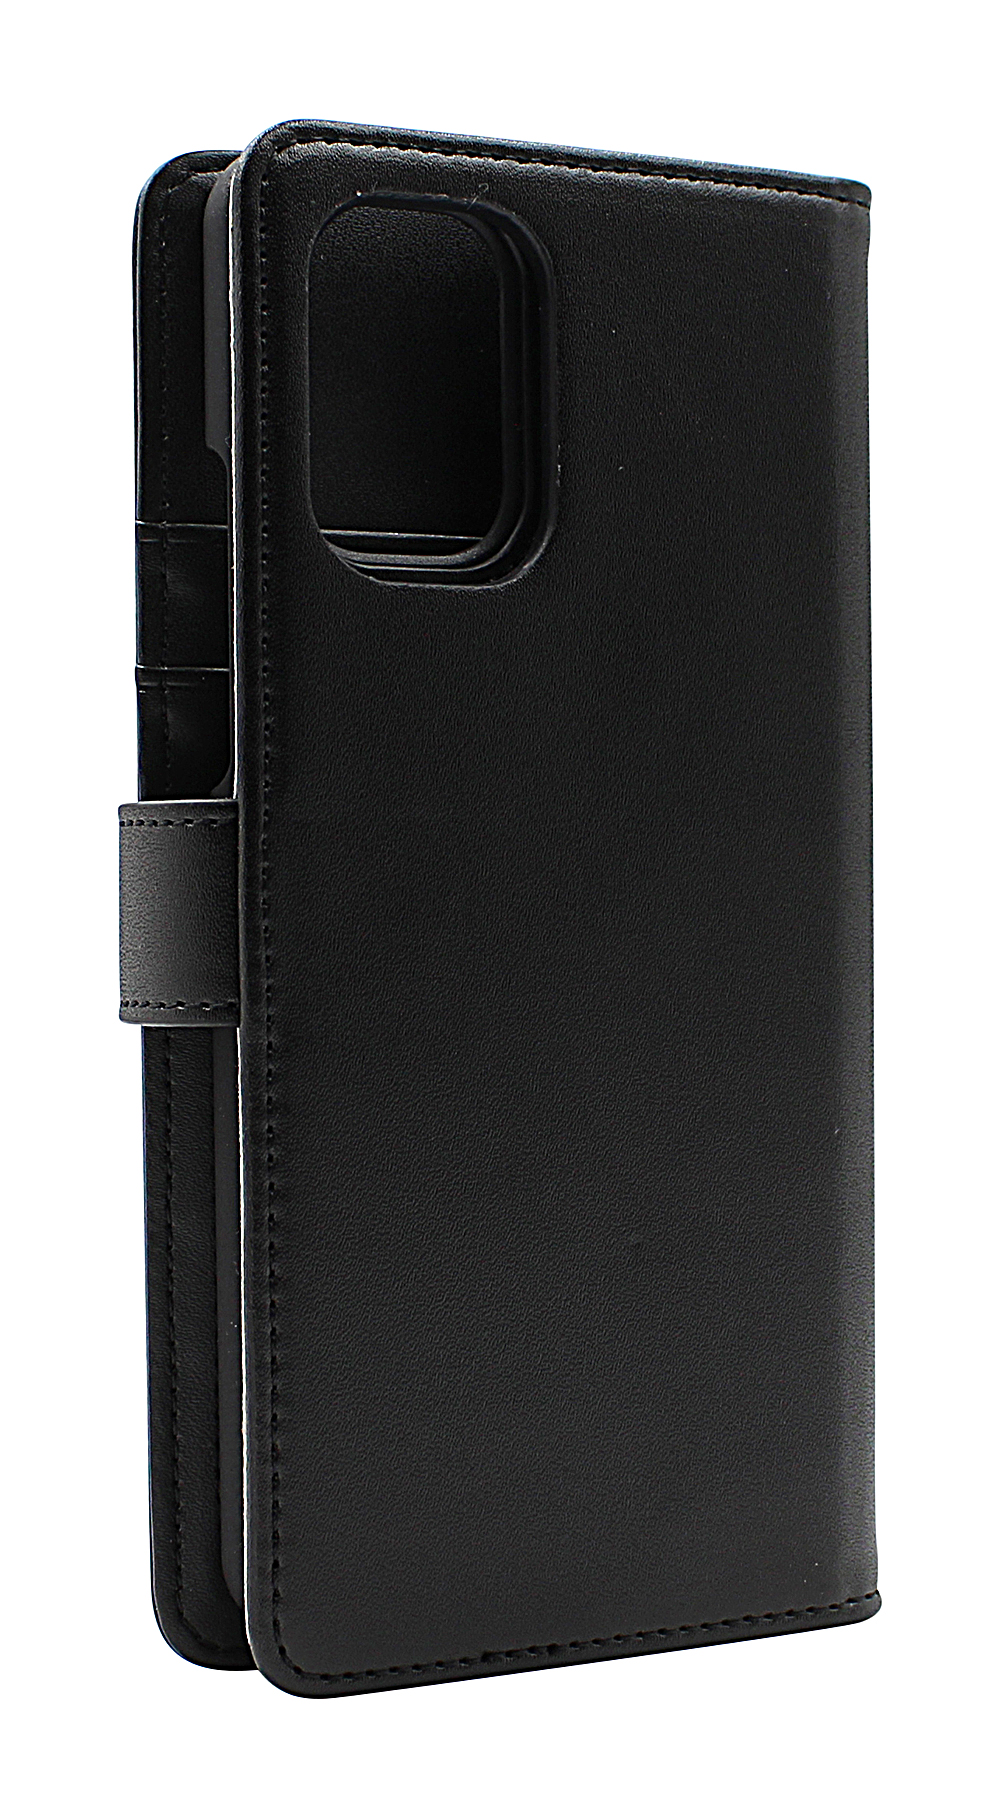 CoverIn Skimblocker Magneettikotelo OnePlus 8T